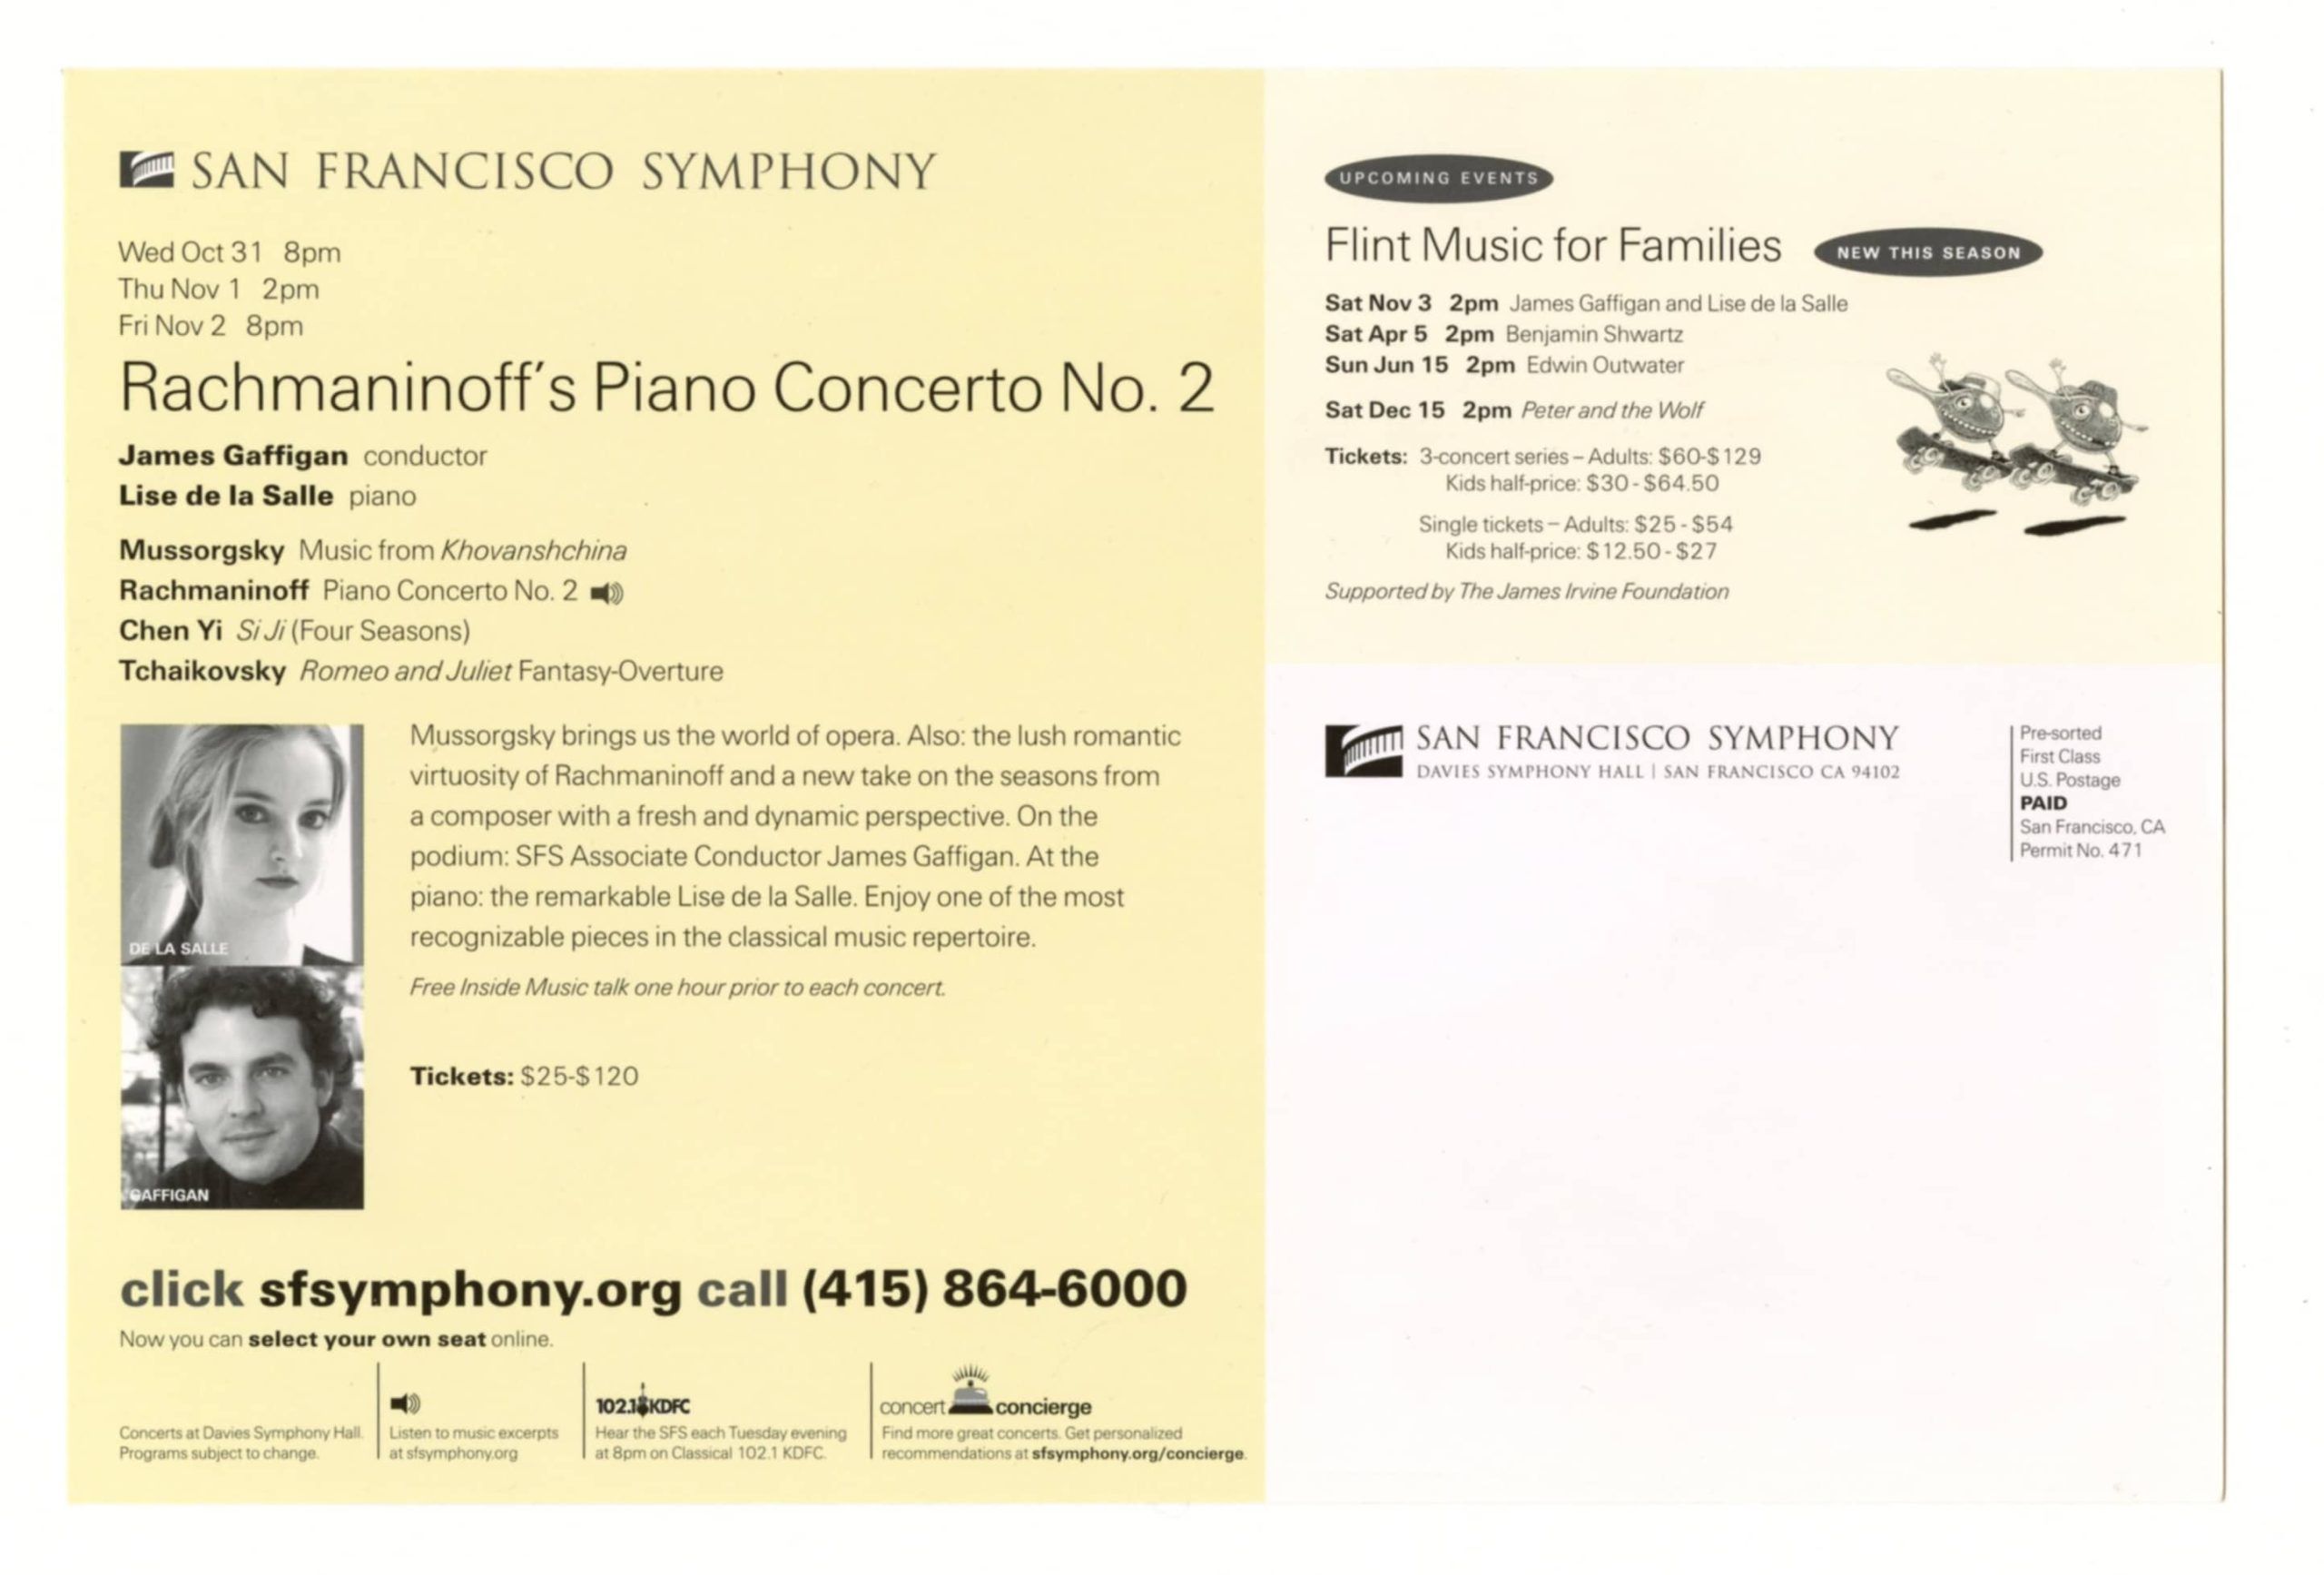 Lisa de la Salle Postcard Rachmaninoff's Piano Concerto 2008 San Francisco Symphony